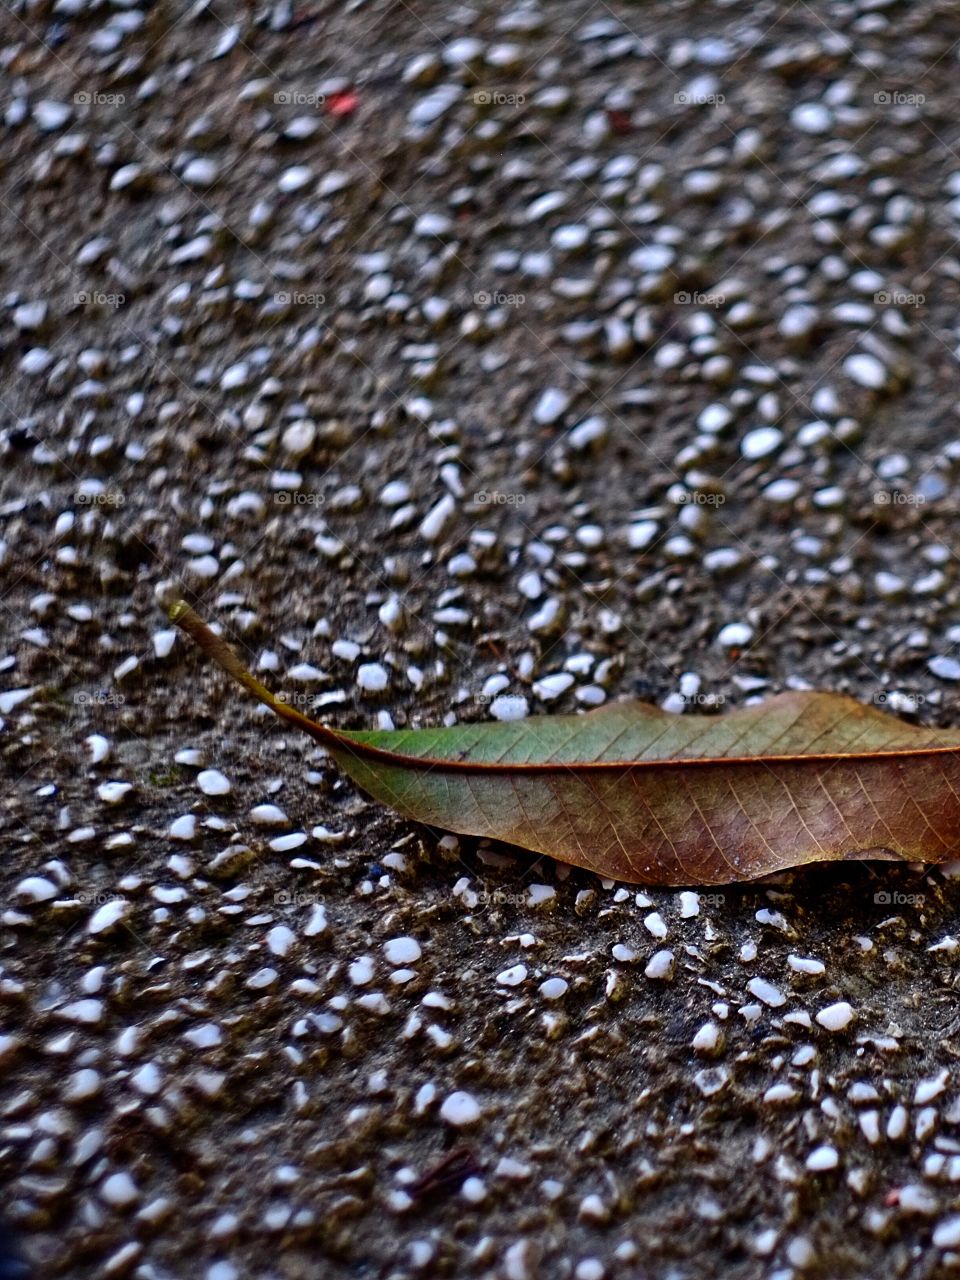 Fallen leaf on the street